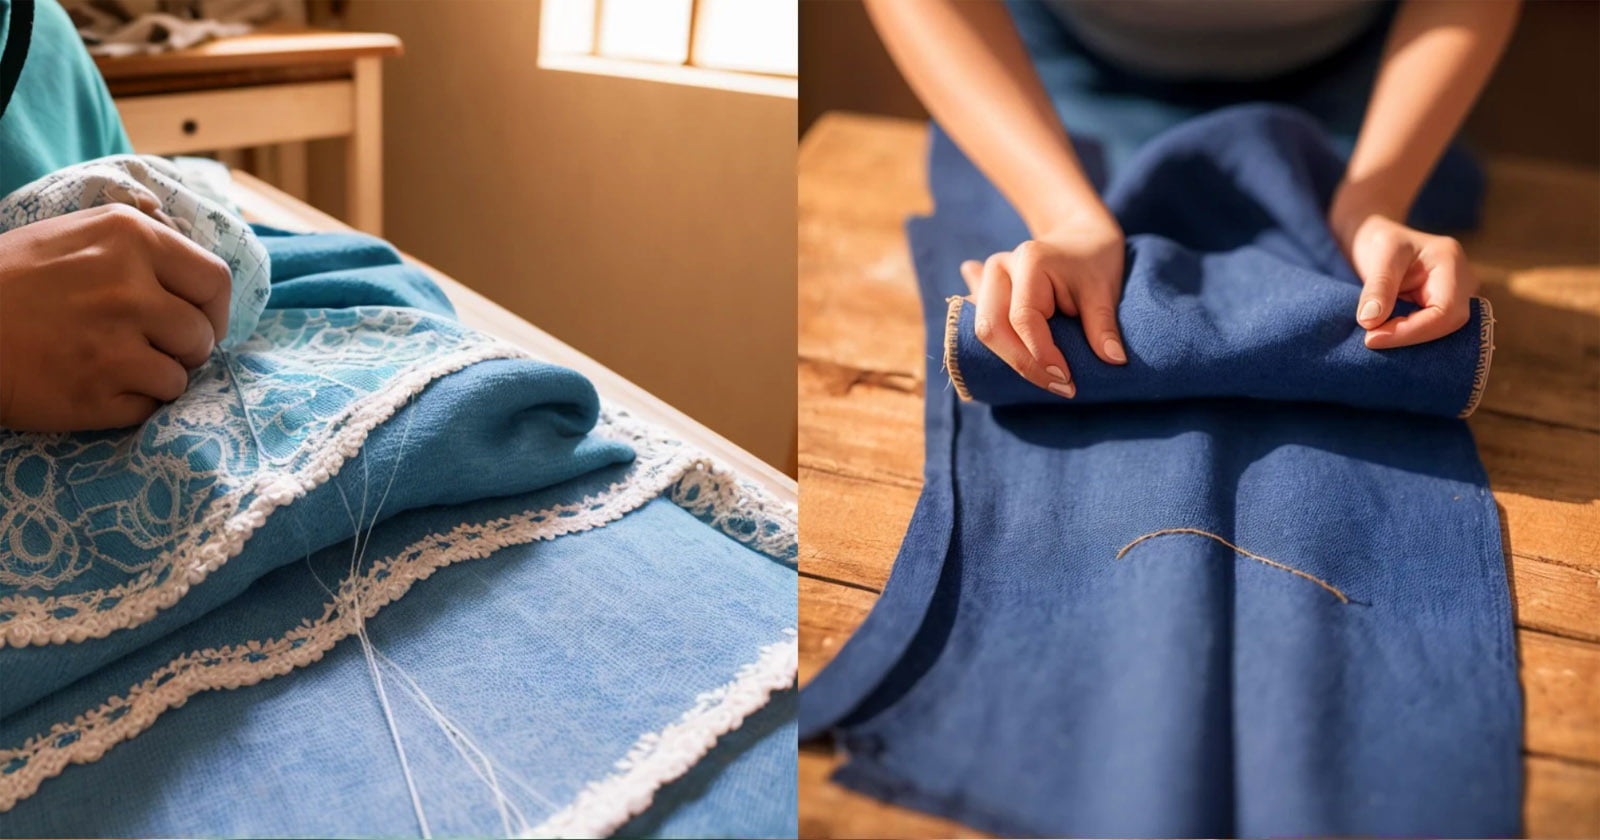 O incrível segredo de uma costureira mexicana para criar projetos de costura sem padrões